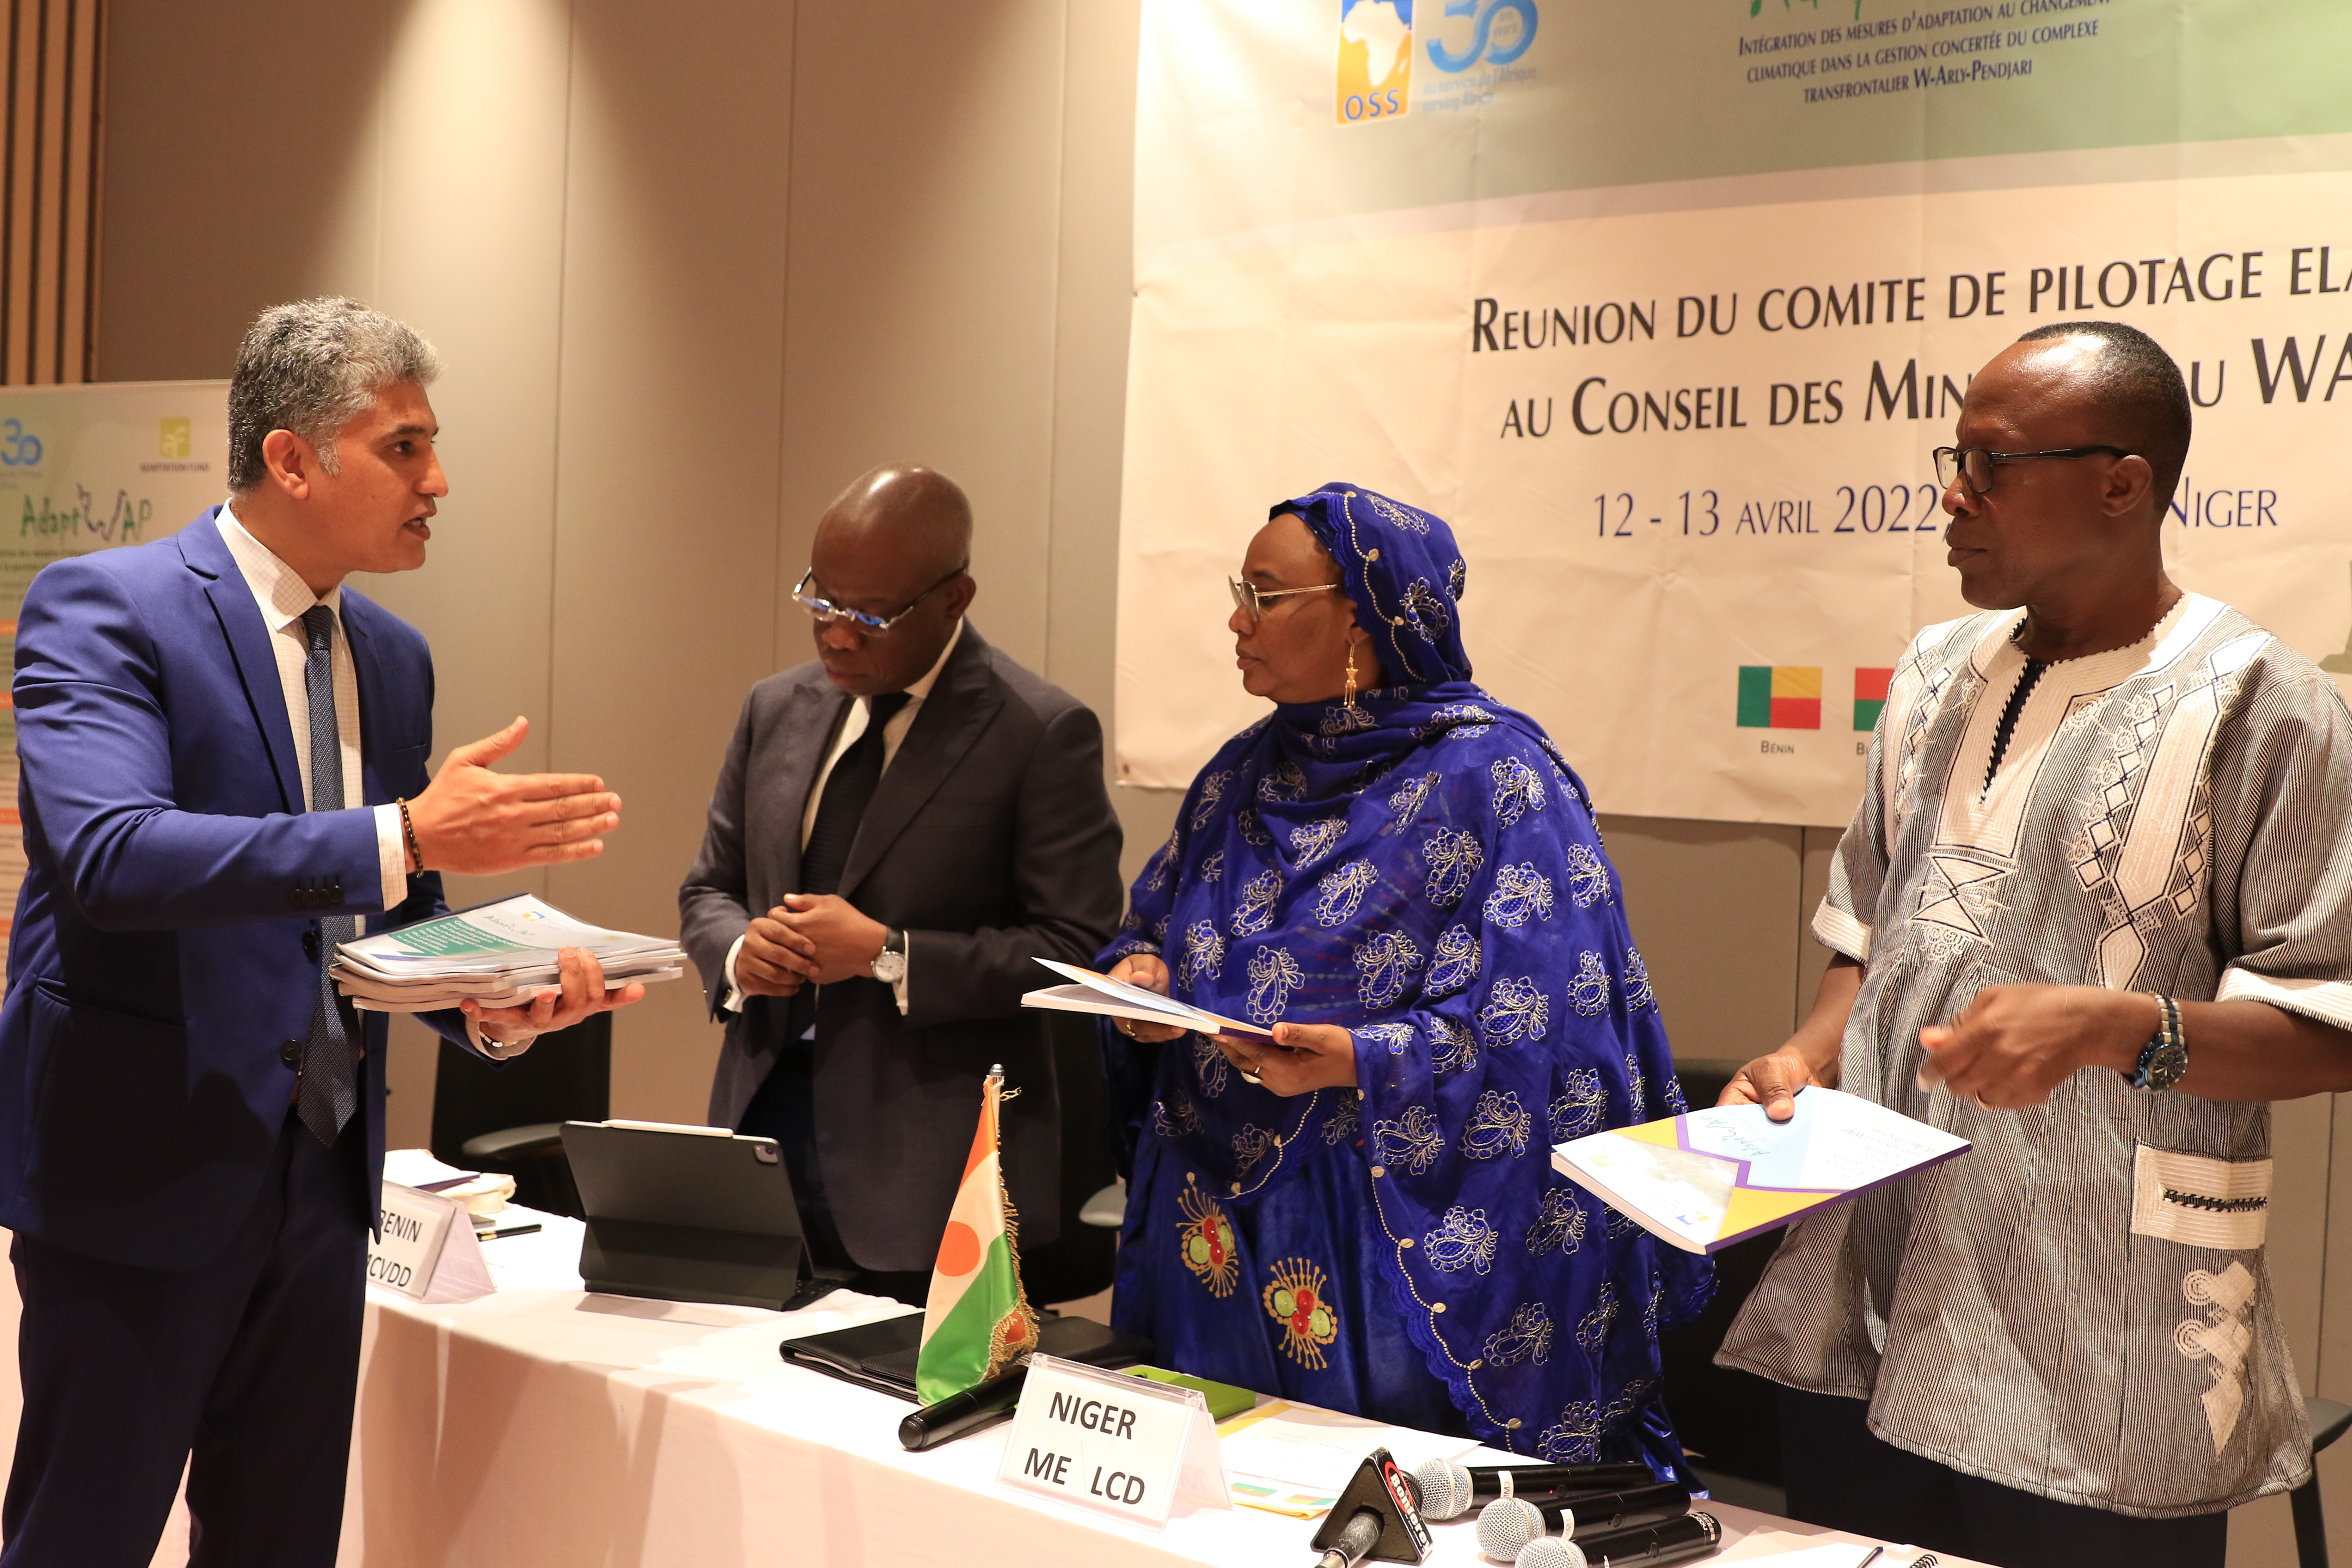  Mission de l’OSS au Niger - De belles perspectives de coopération pour l’avenir, avril 2022